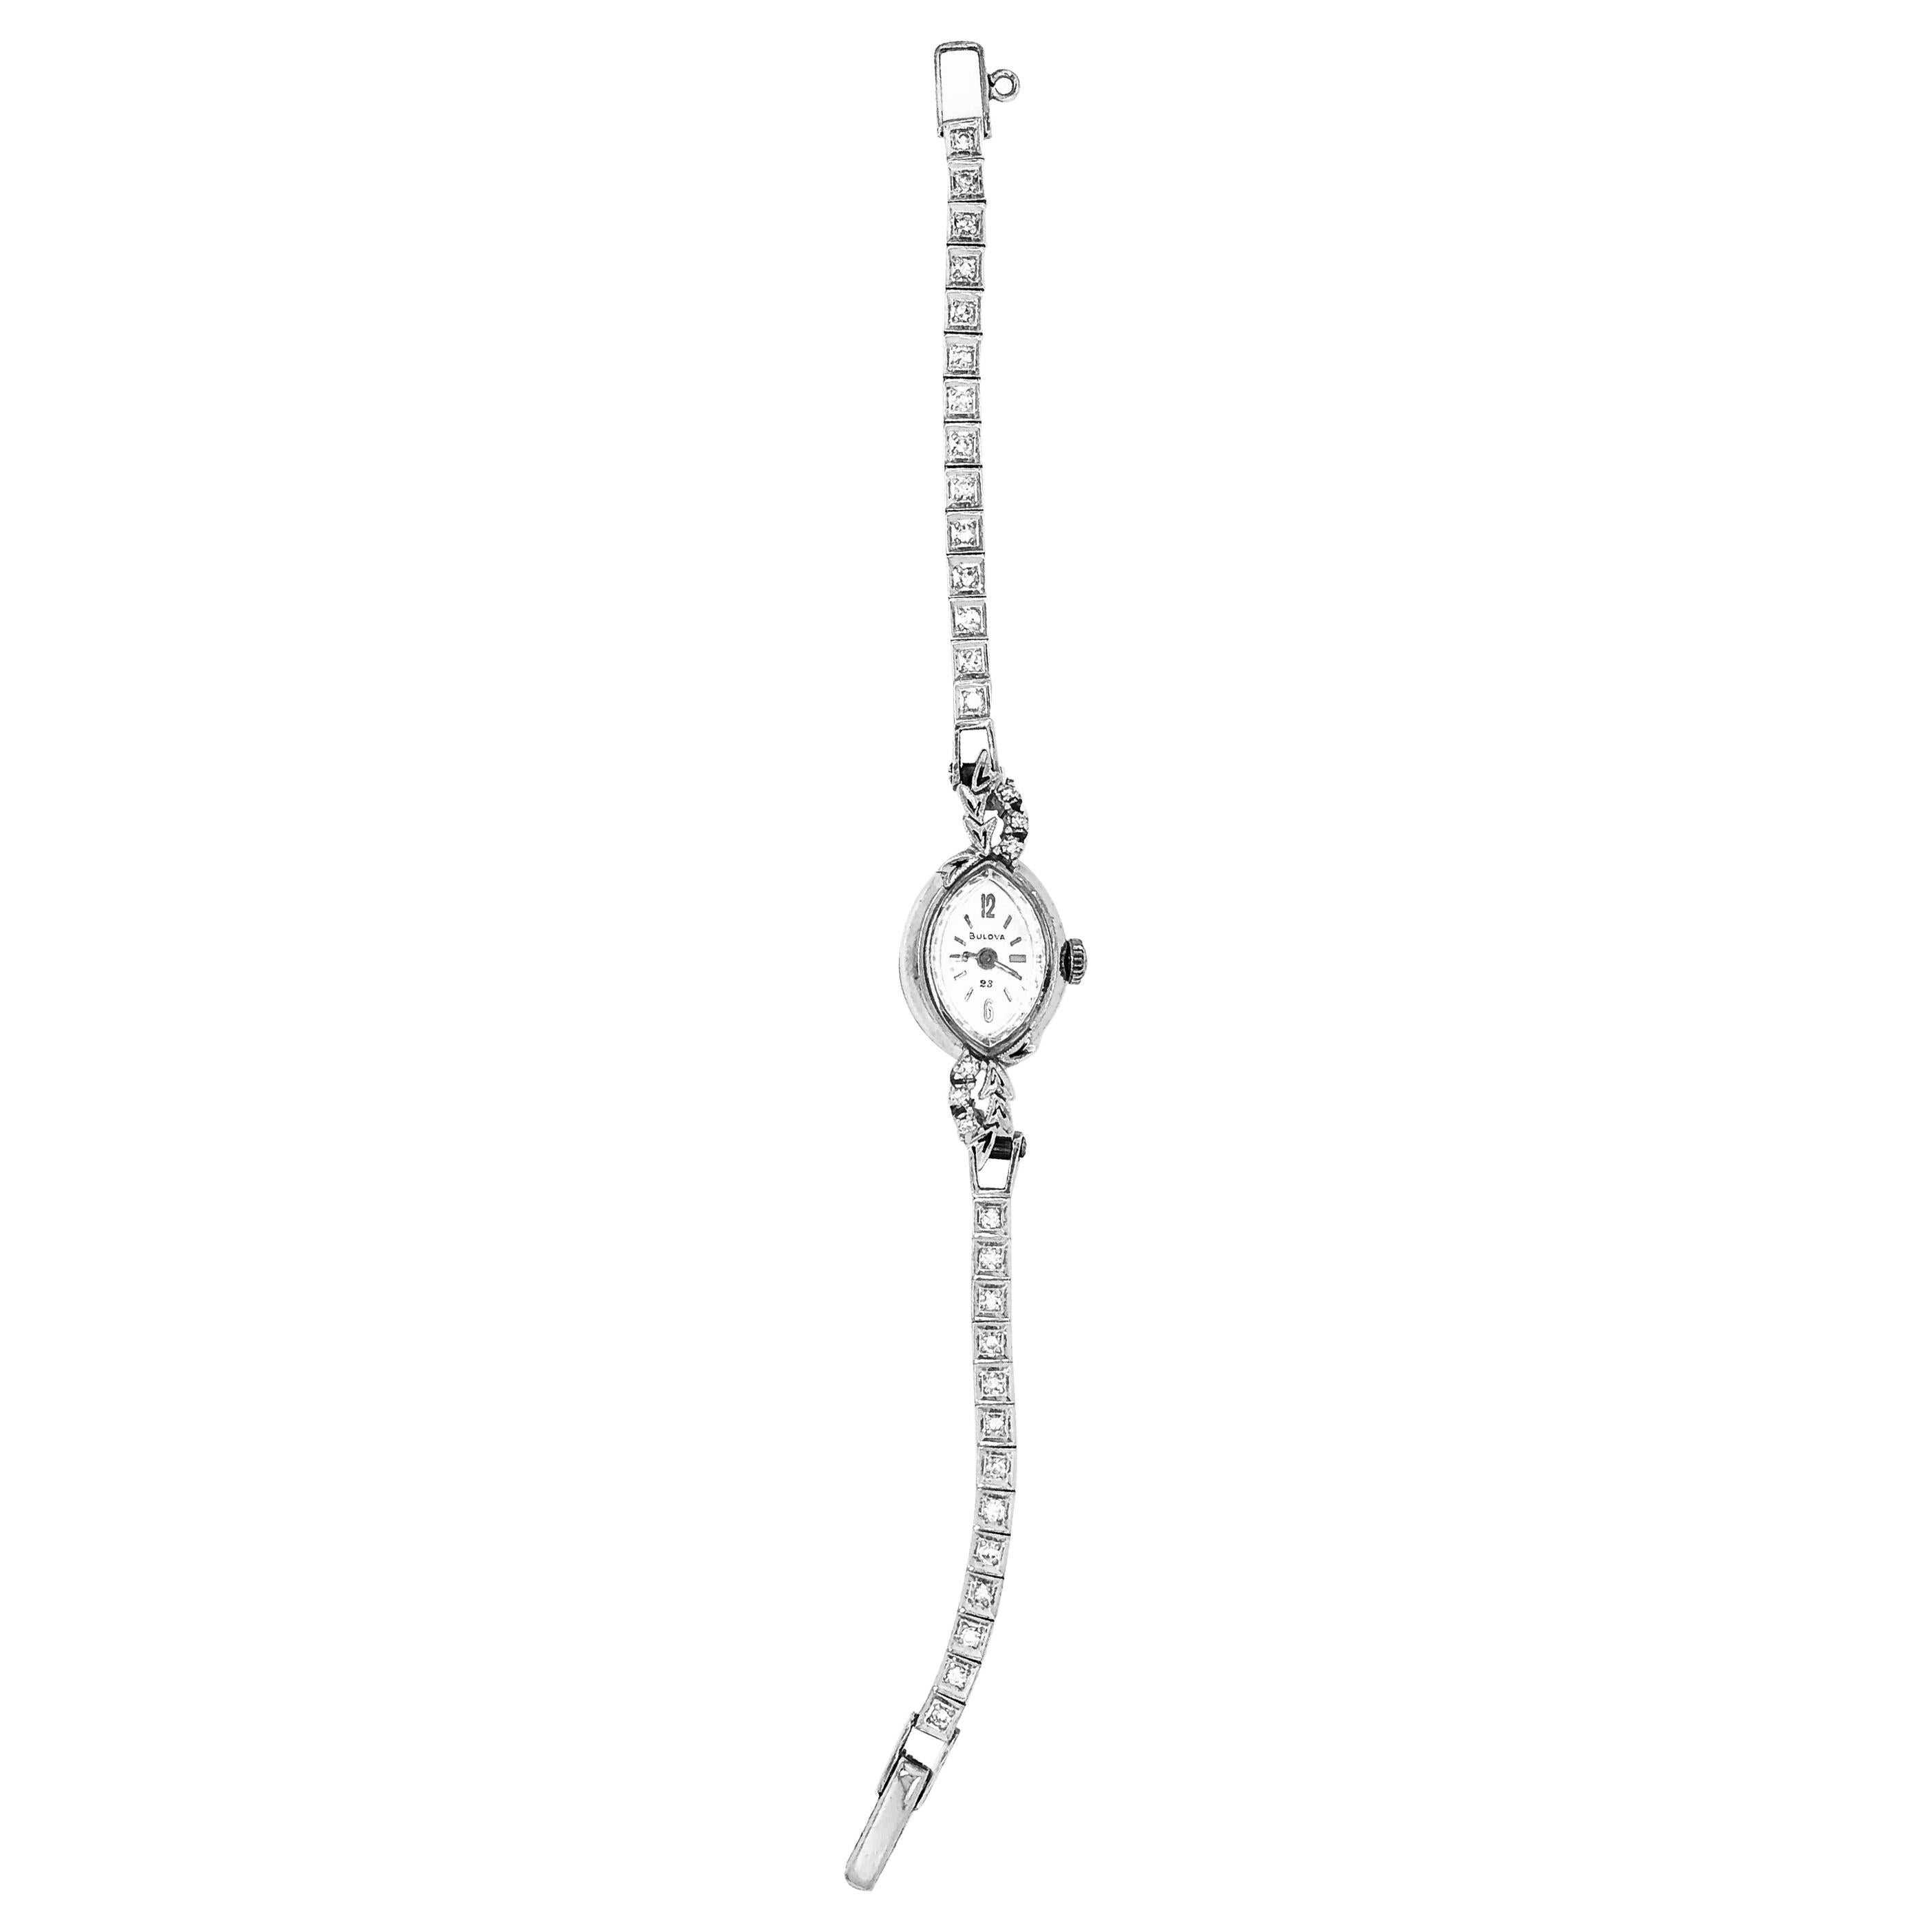 Bulova Ladies Wristwatch Art Deco Style with Diamonds For Sale